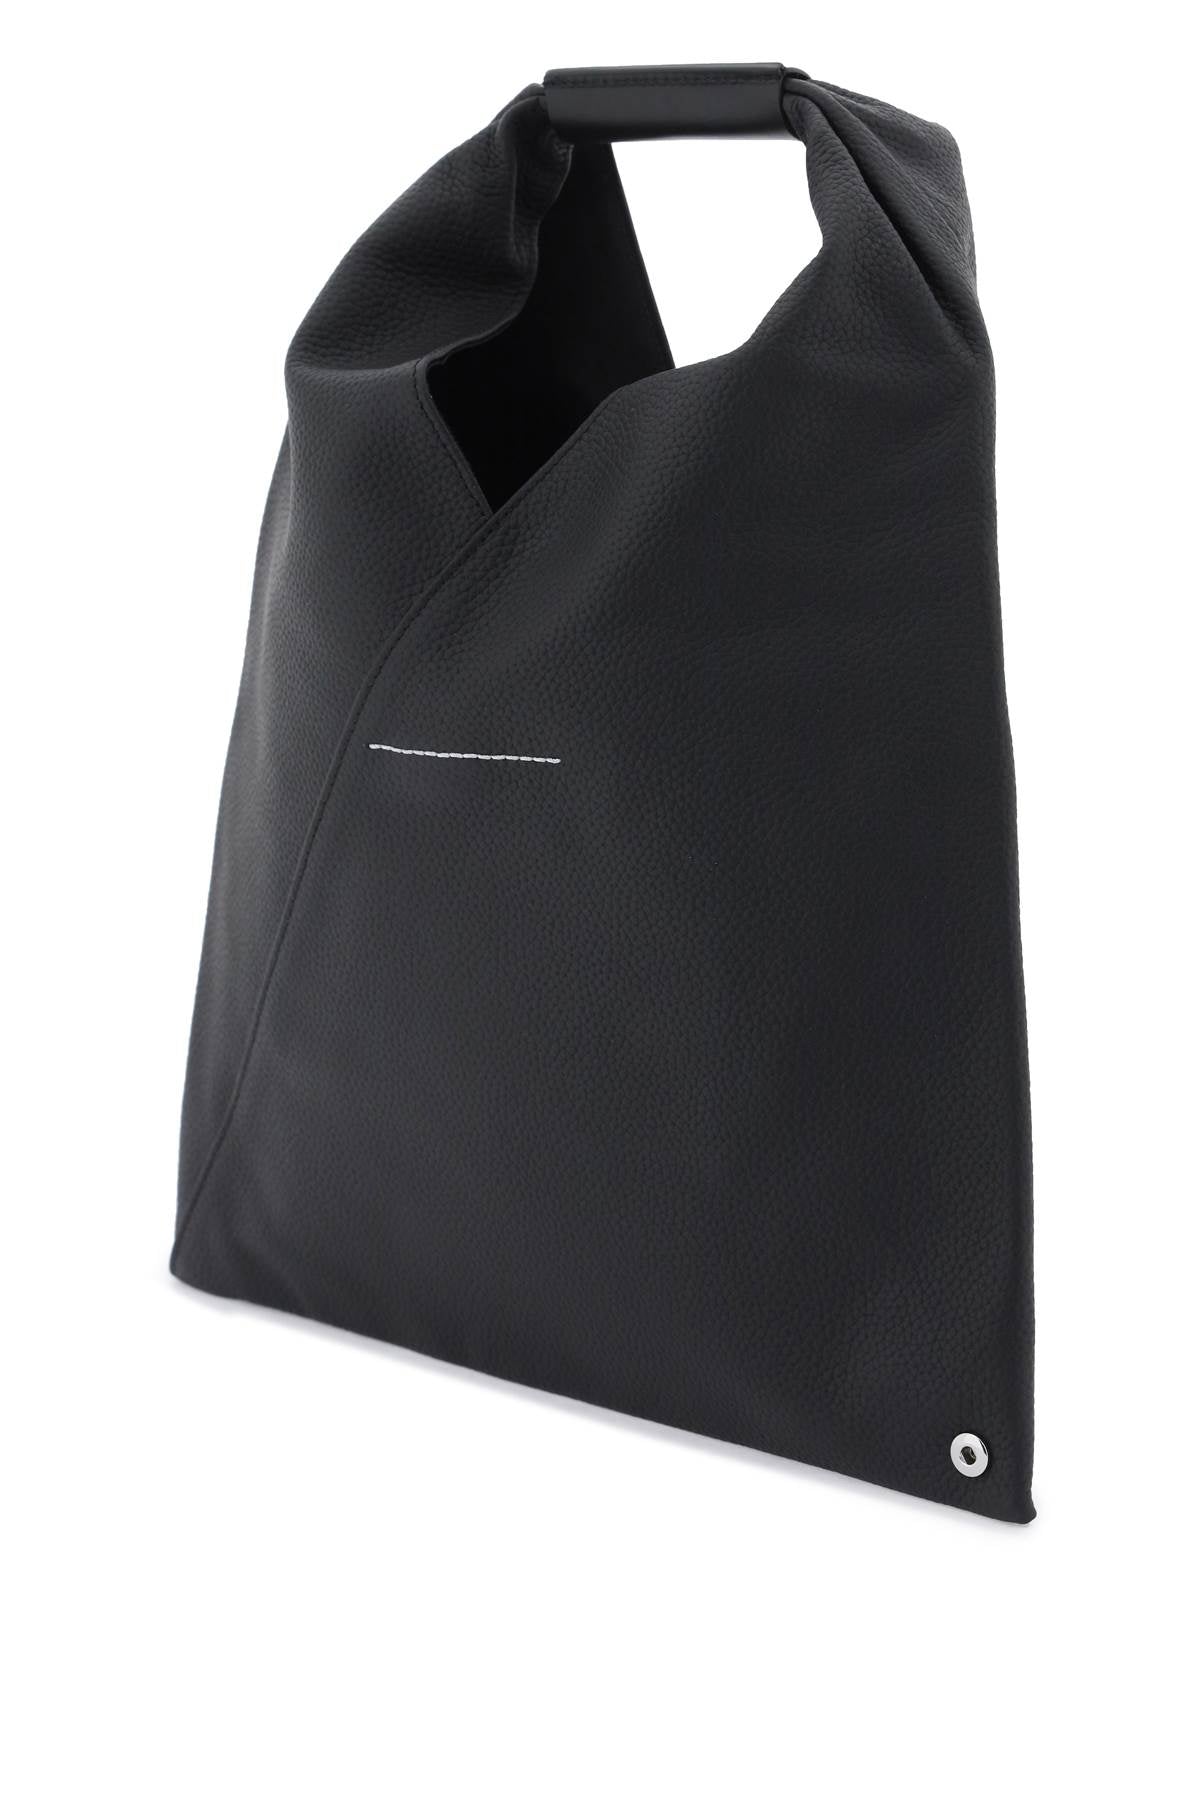 حقيبة يد يابانية فاخرة للسيدات | بجلد ناعم مع تصميم فريد